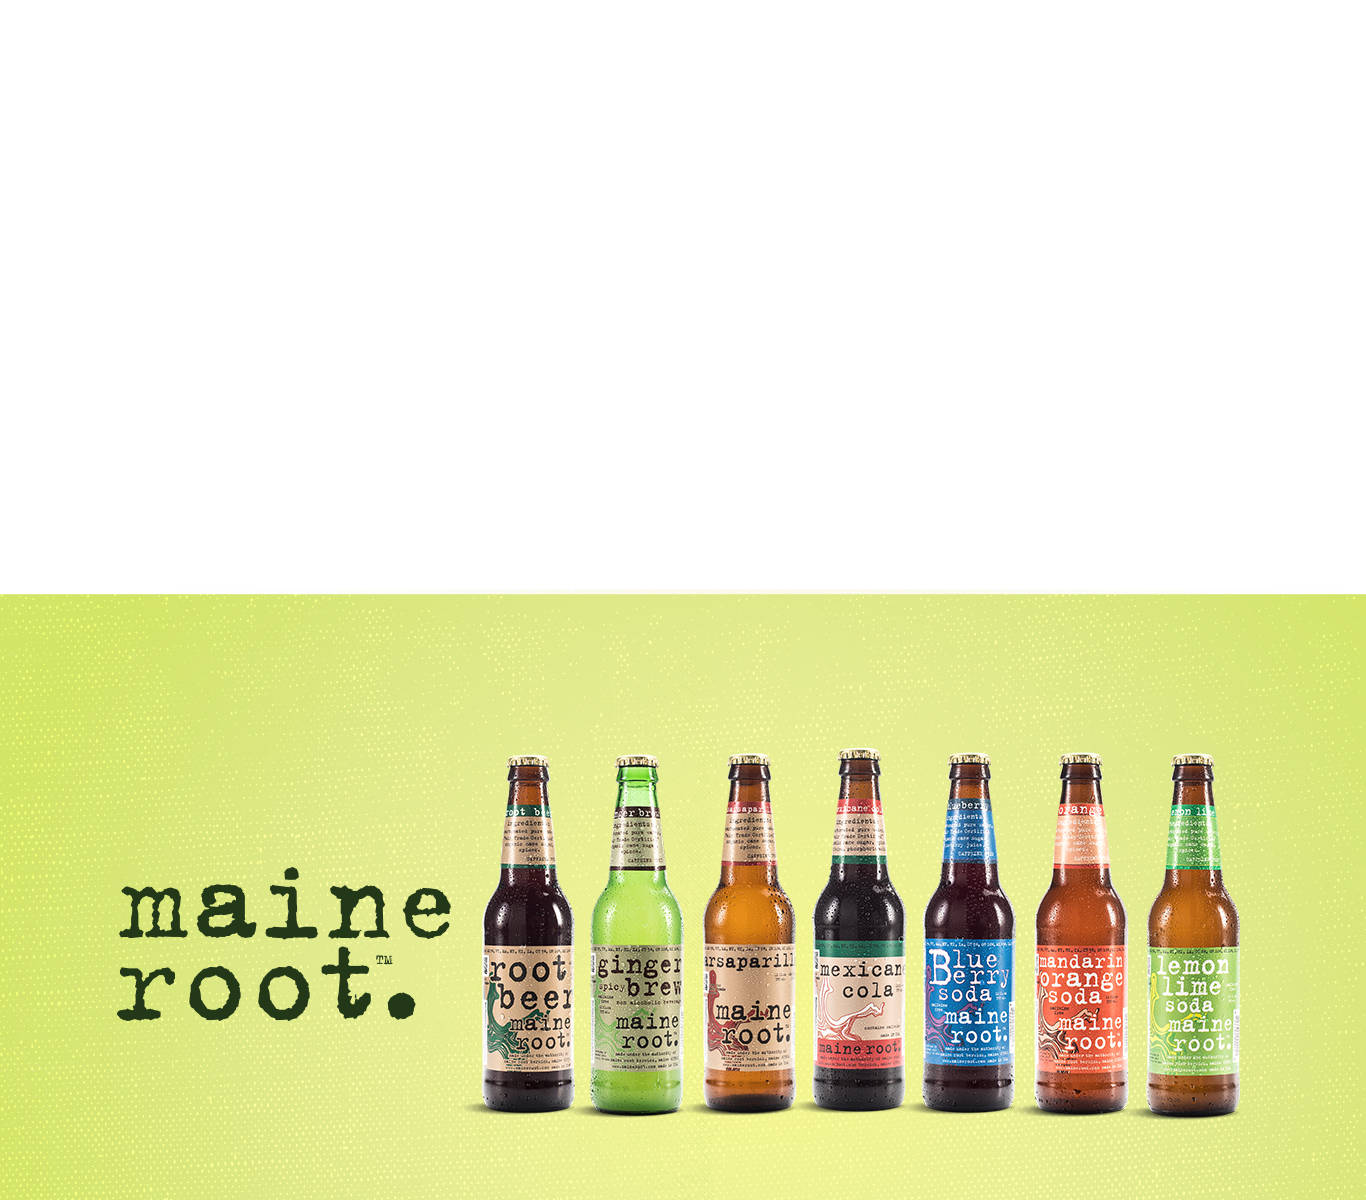 Maine Root Drinks Social Media Ad Wallpaper